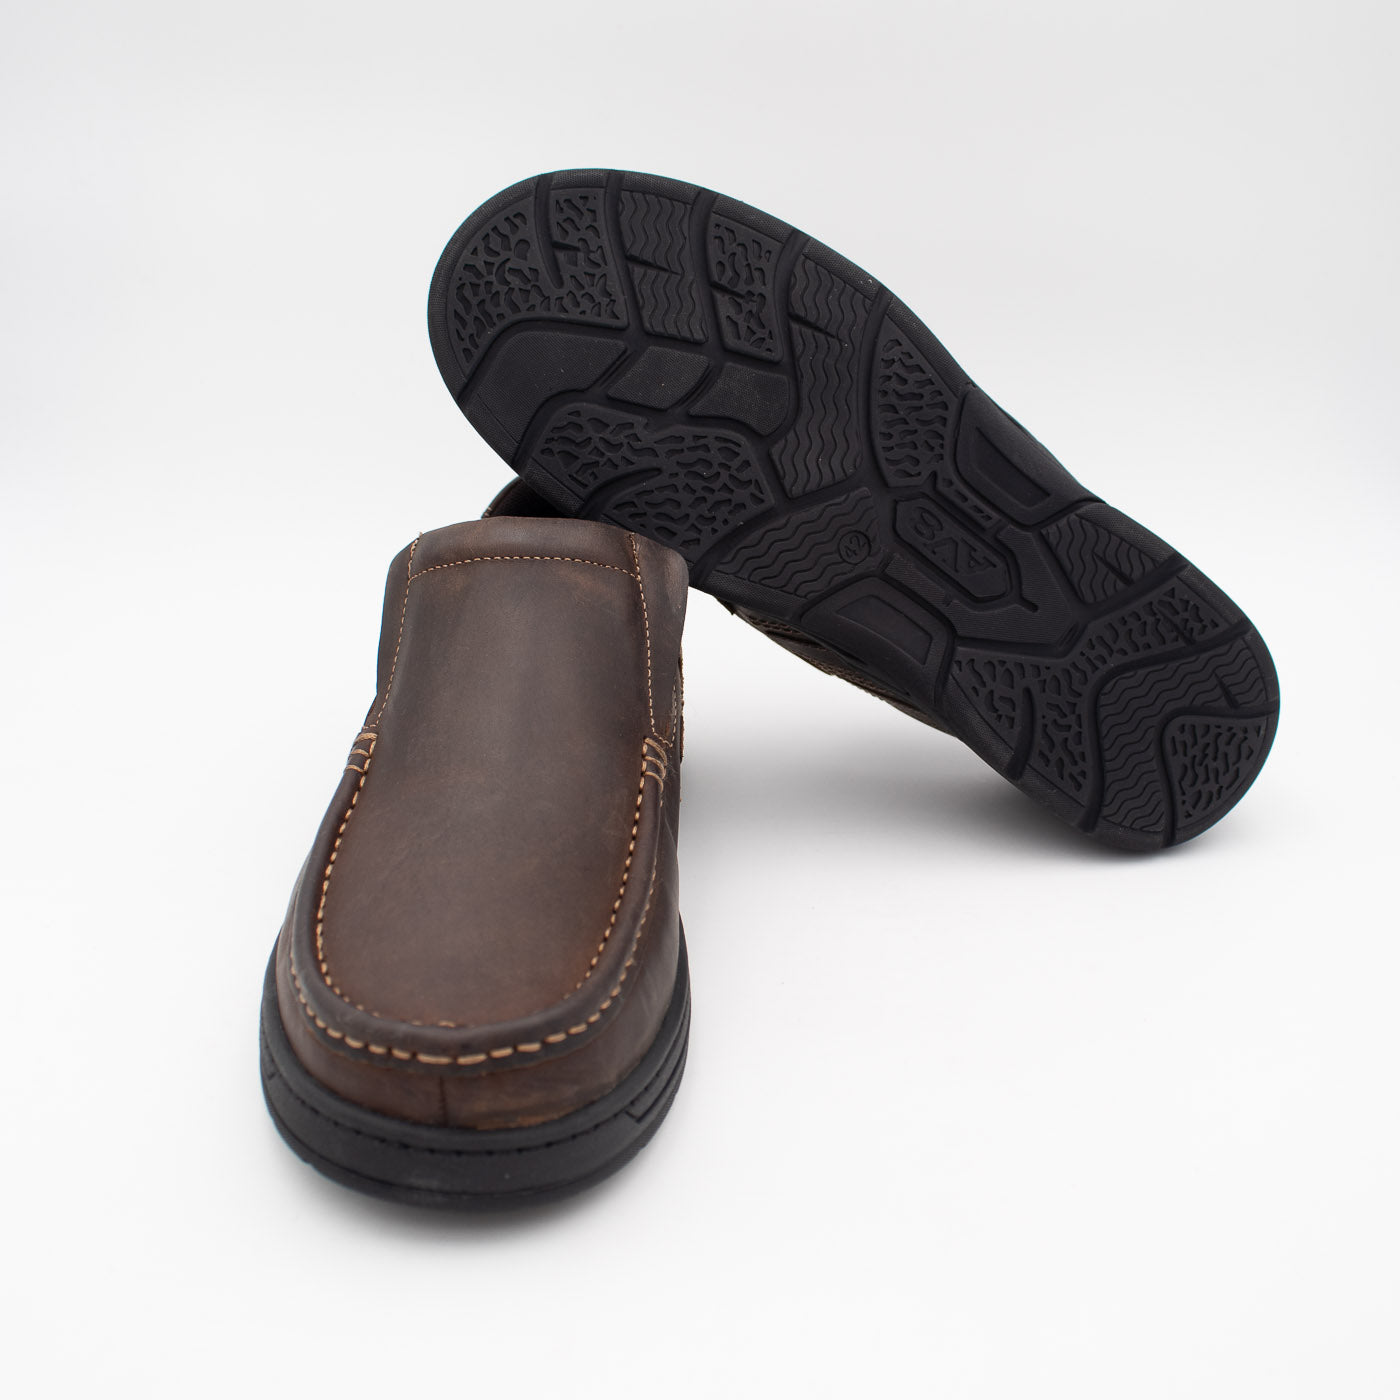 Detail of the durable sole of AV8 Kalvin Nubuck Slip-On shoe.